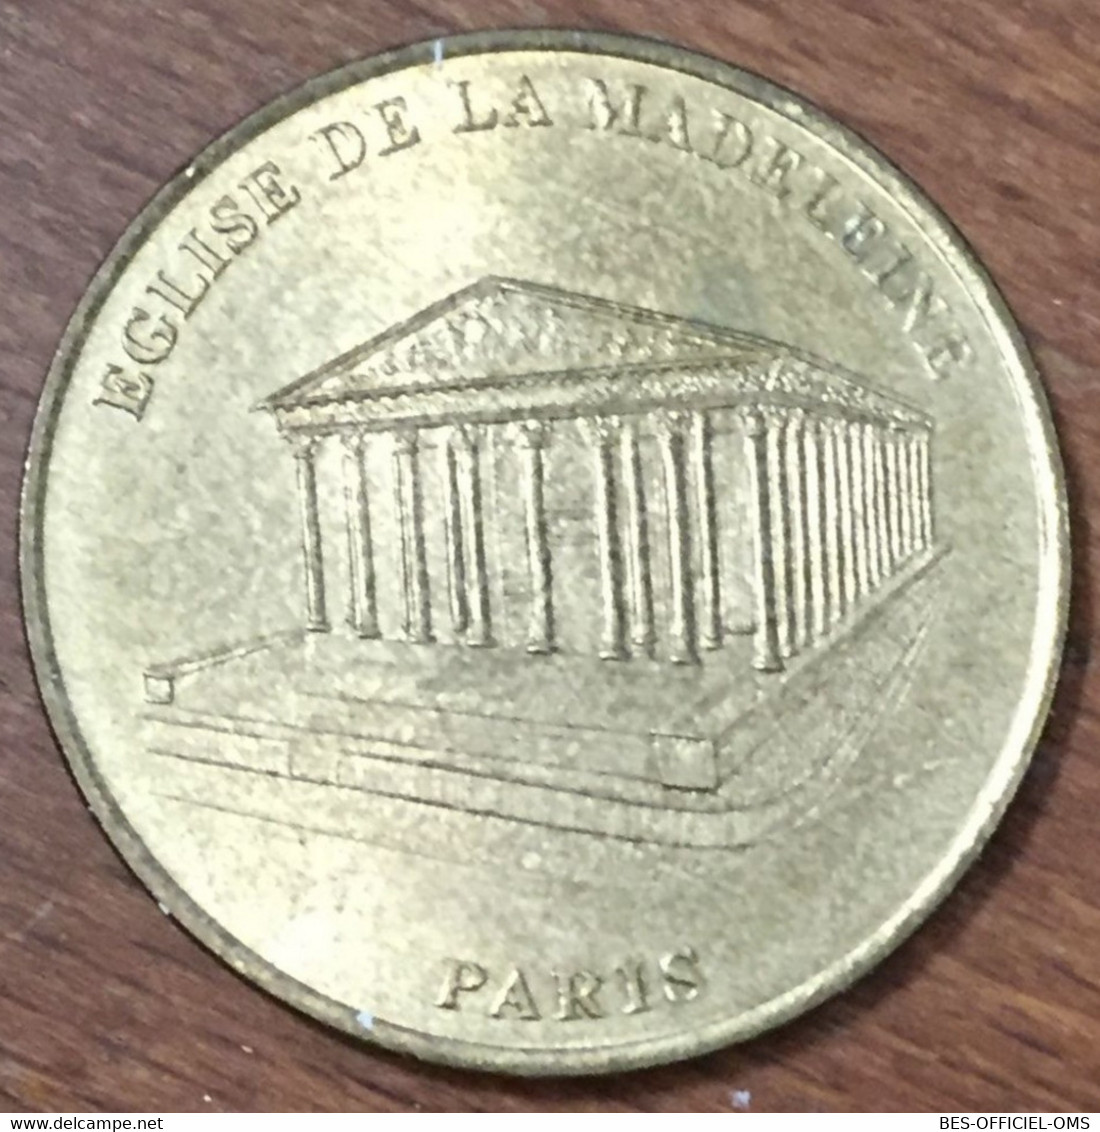 75008 PARIS ÉGLISE DE LA MADELEINE MDP 2002 MEDAILLE SOUVENIR MONNAIE DE PARIS JETON TOURISTIQUE MEDALS COINS TOKENS - 2002